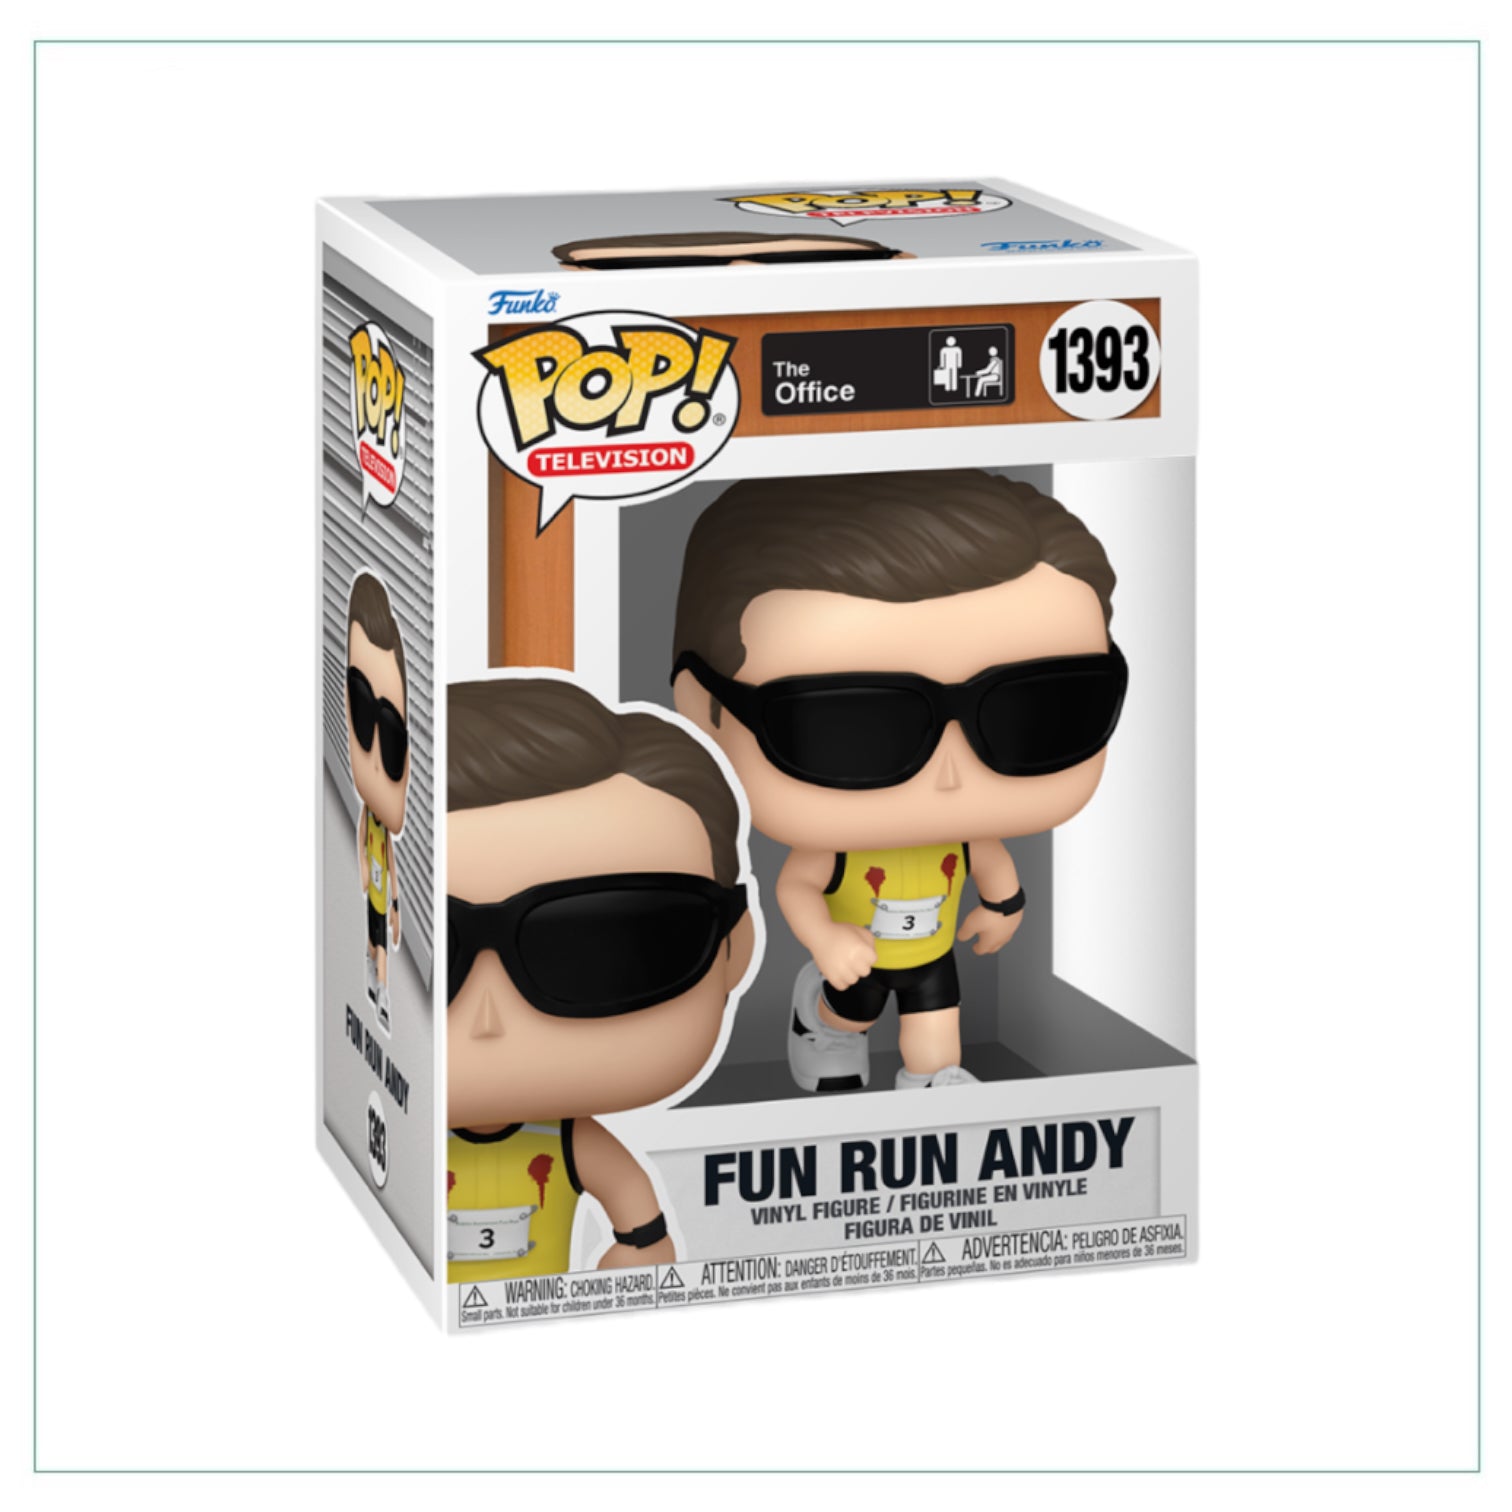 Fun Run Andy #1393 Funko Pop! - The Office